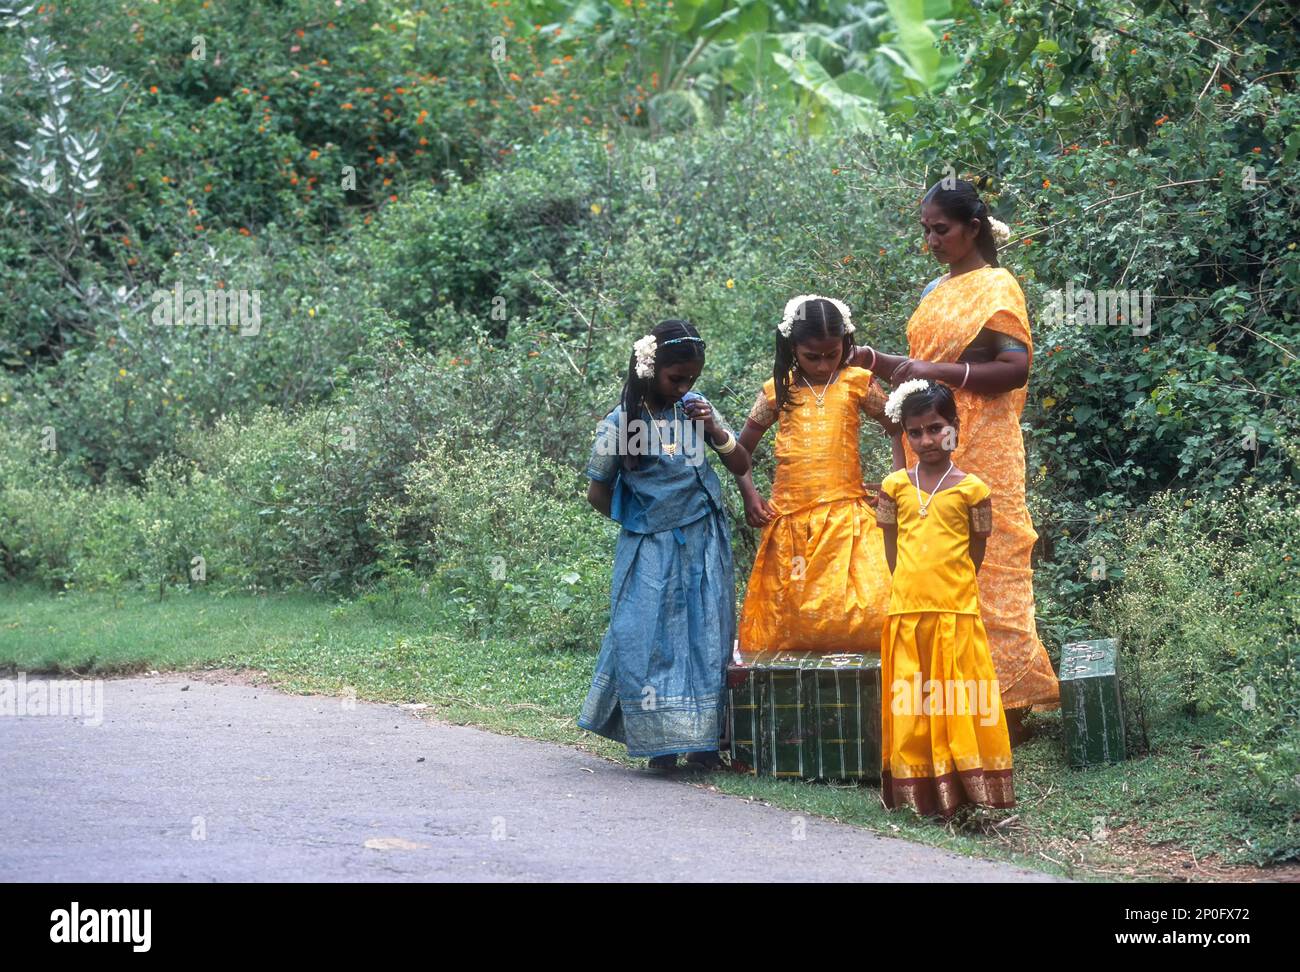 Abitanti del villaggio in attesa di autobus, Tamil Nadu, India Foto Stock